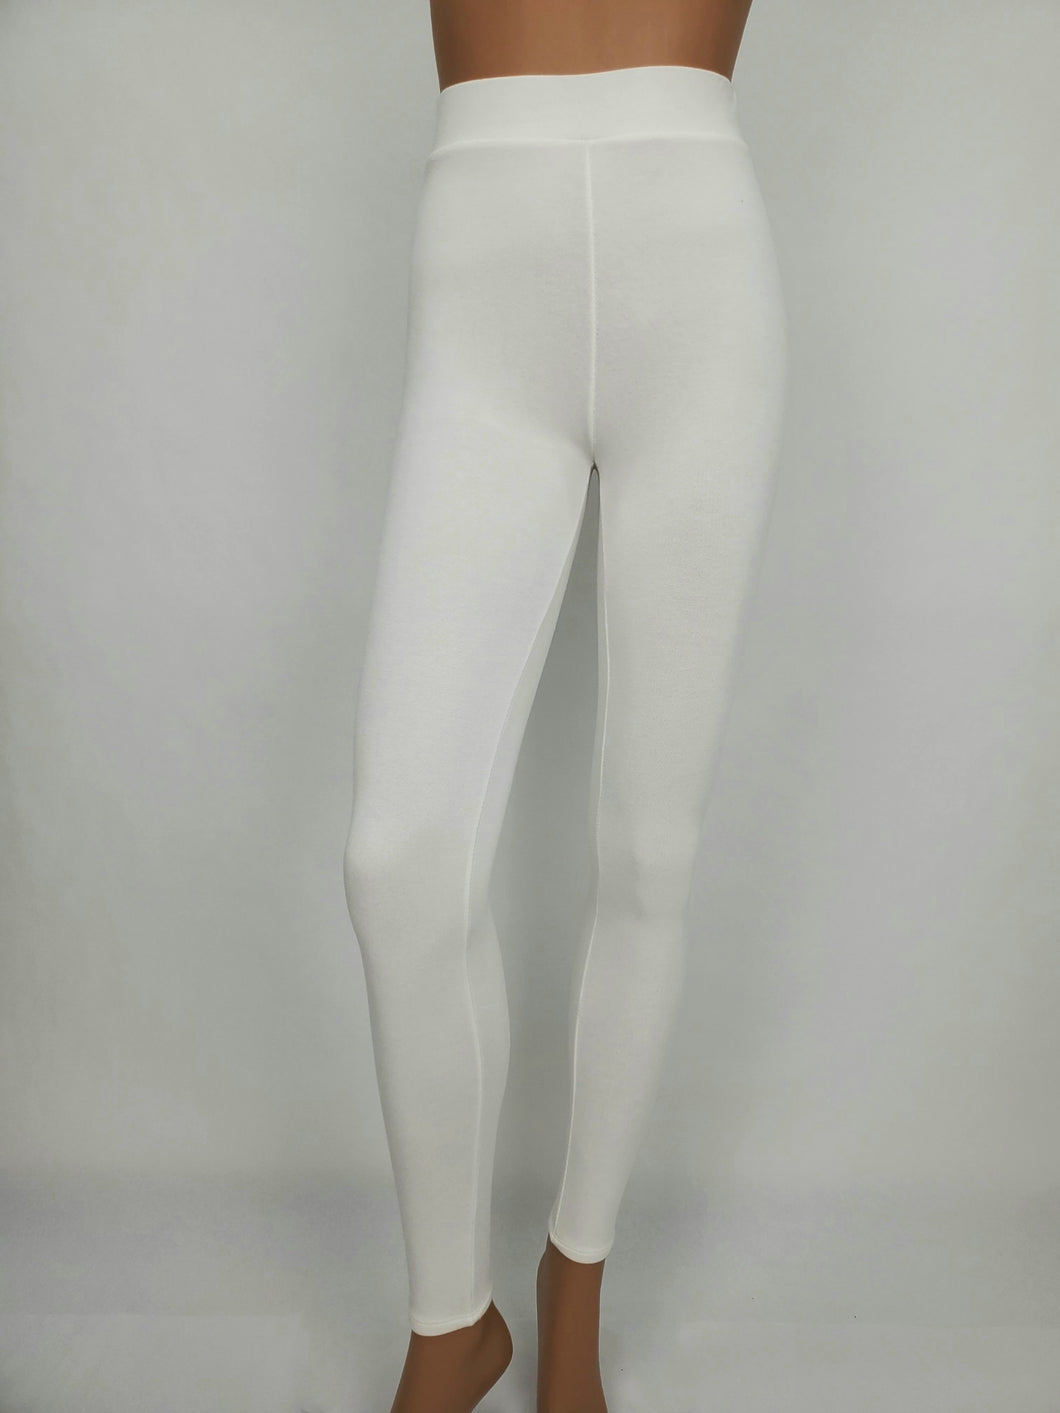 High Waist Legging Pants (White)